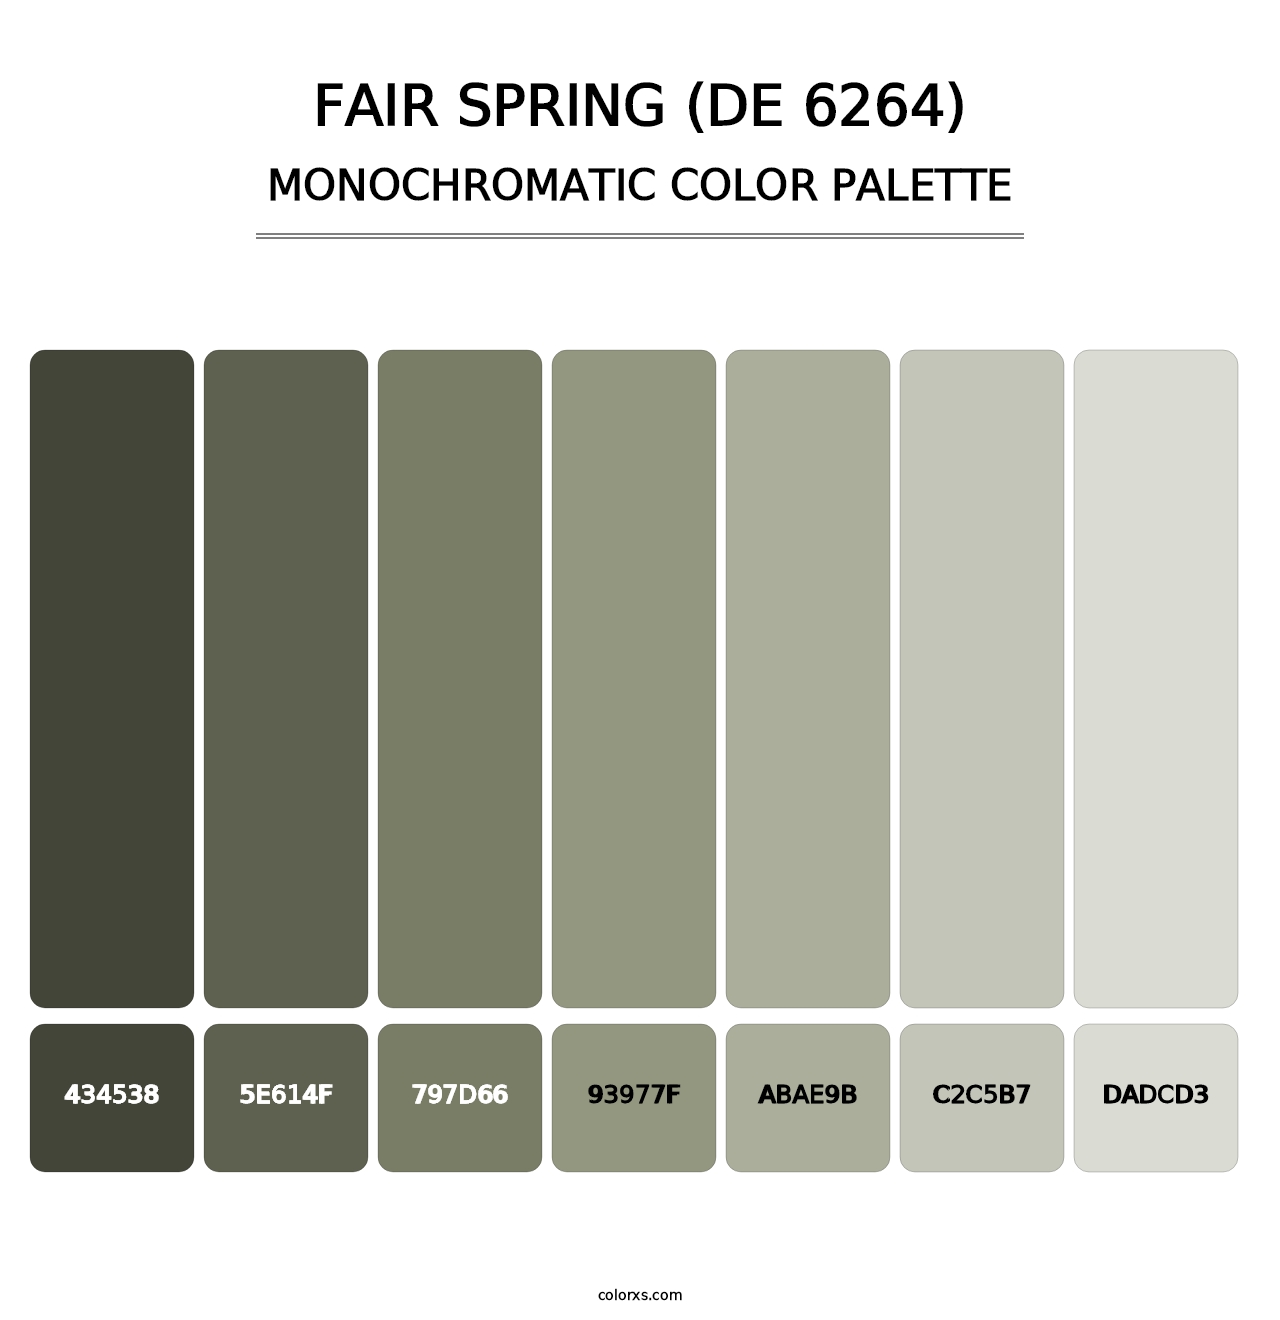 Fair Spring (DE 6264) - Monochromatic Color Palette